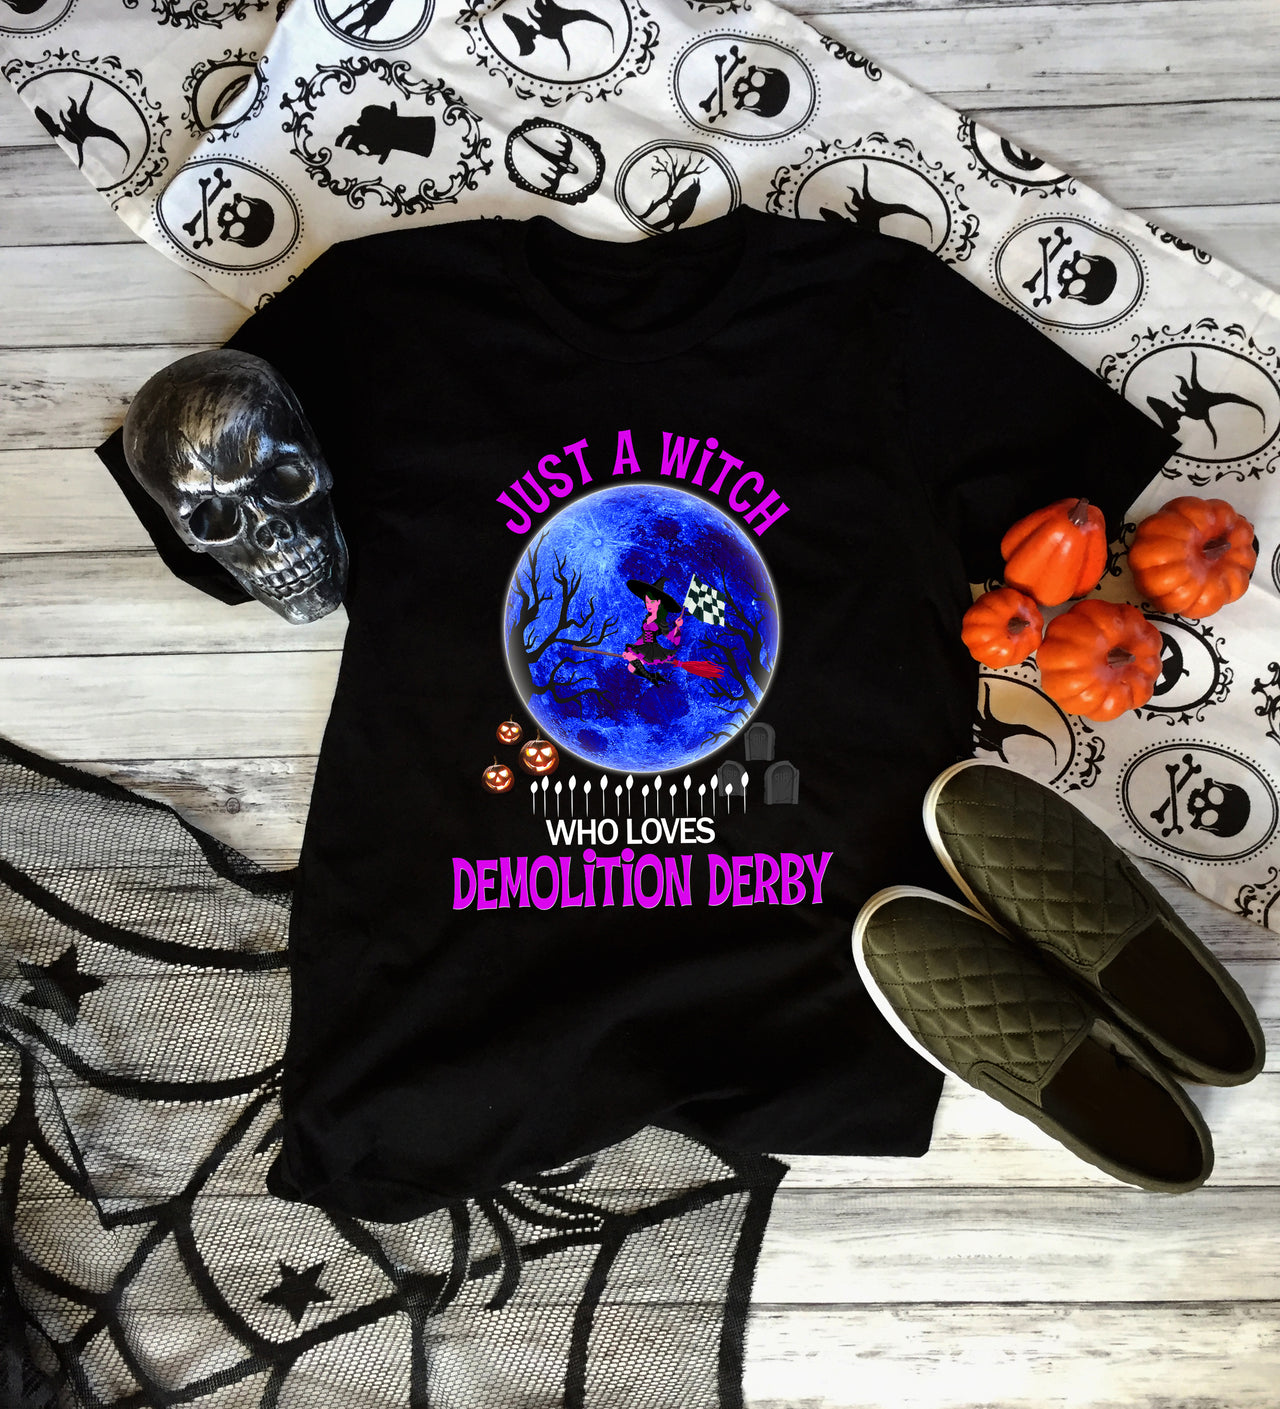 demolition derby halloween t-shirts